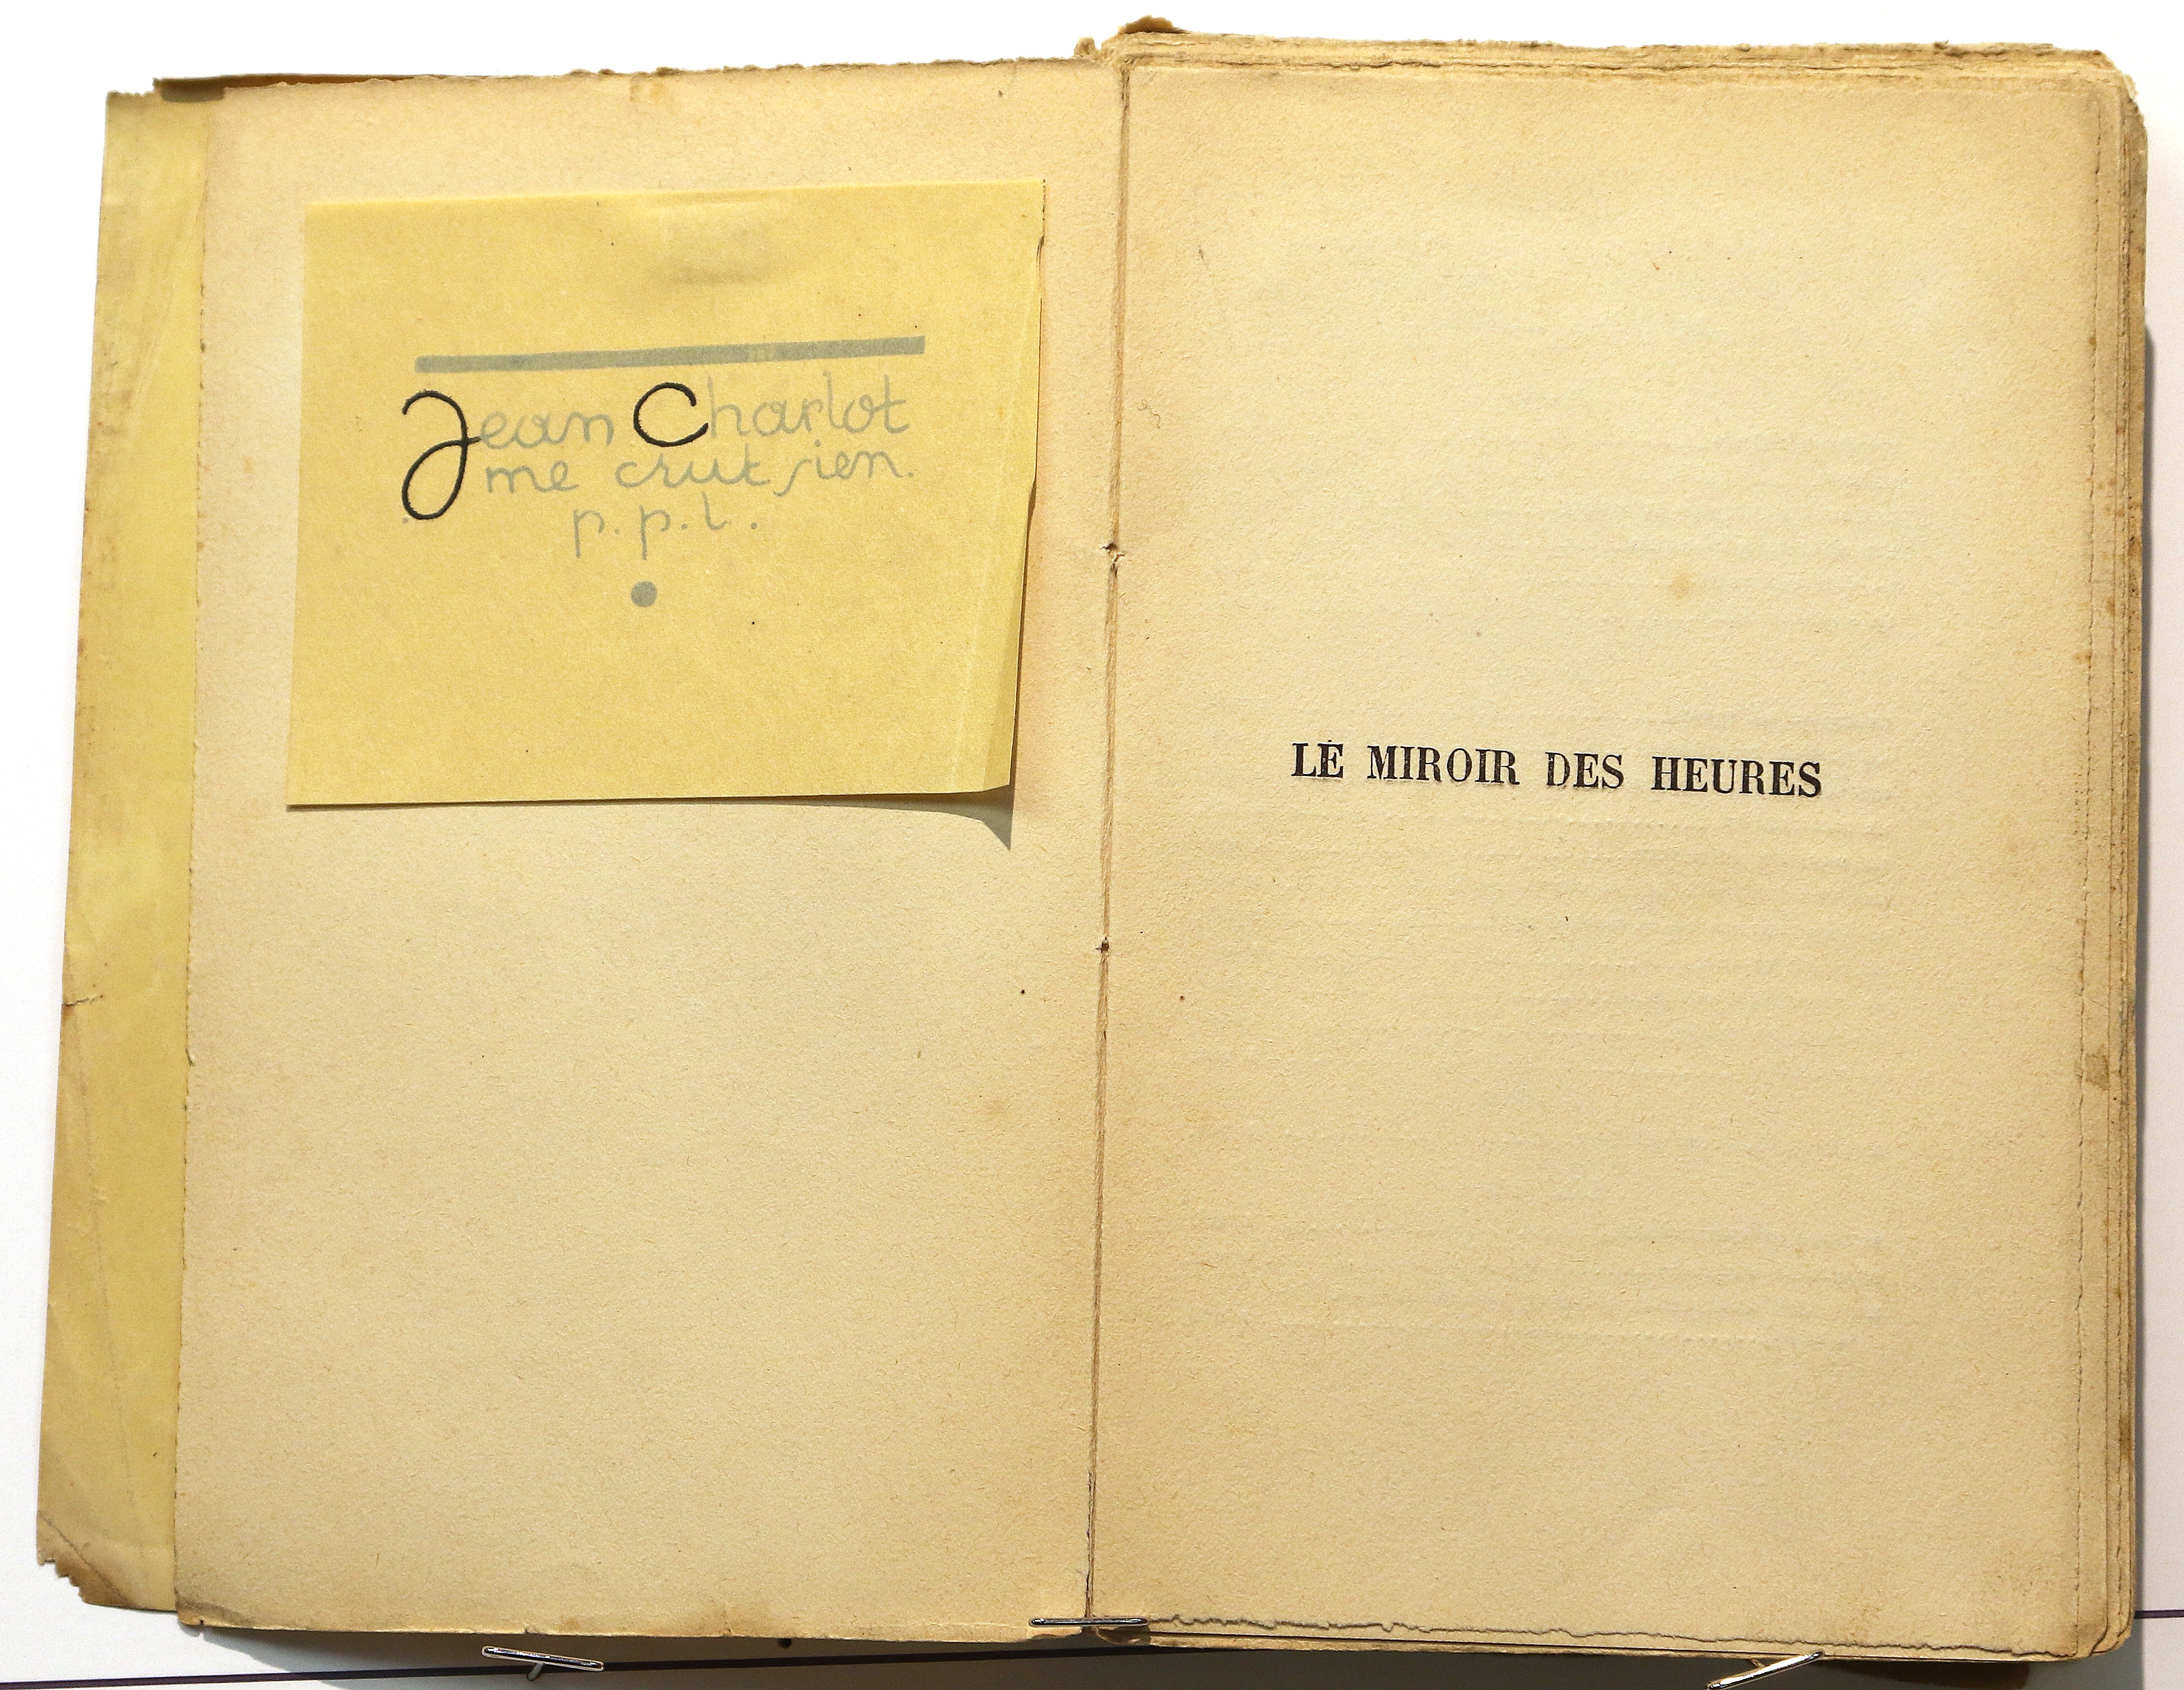 Second title page.  Le Miroir des Heures, illustrations.  Jean Charlot.